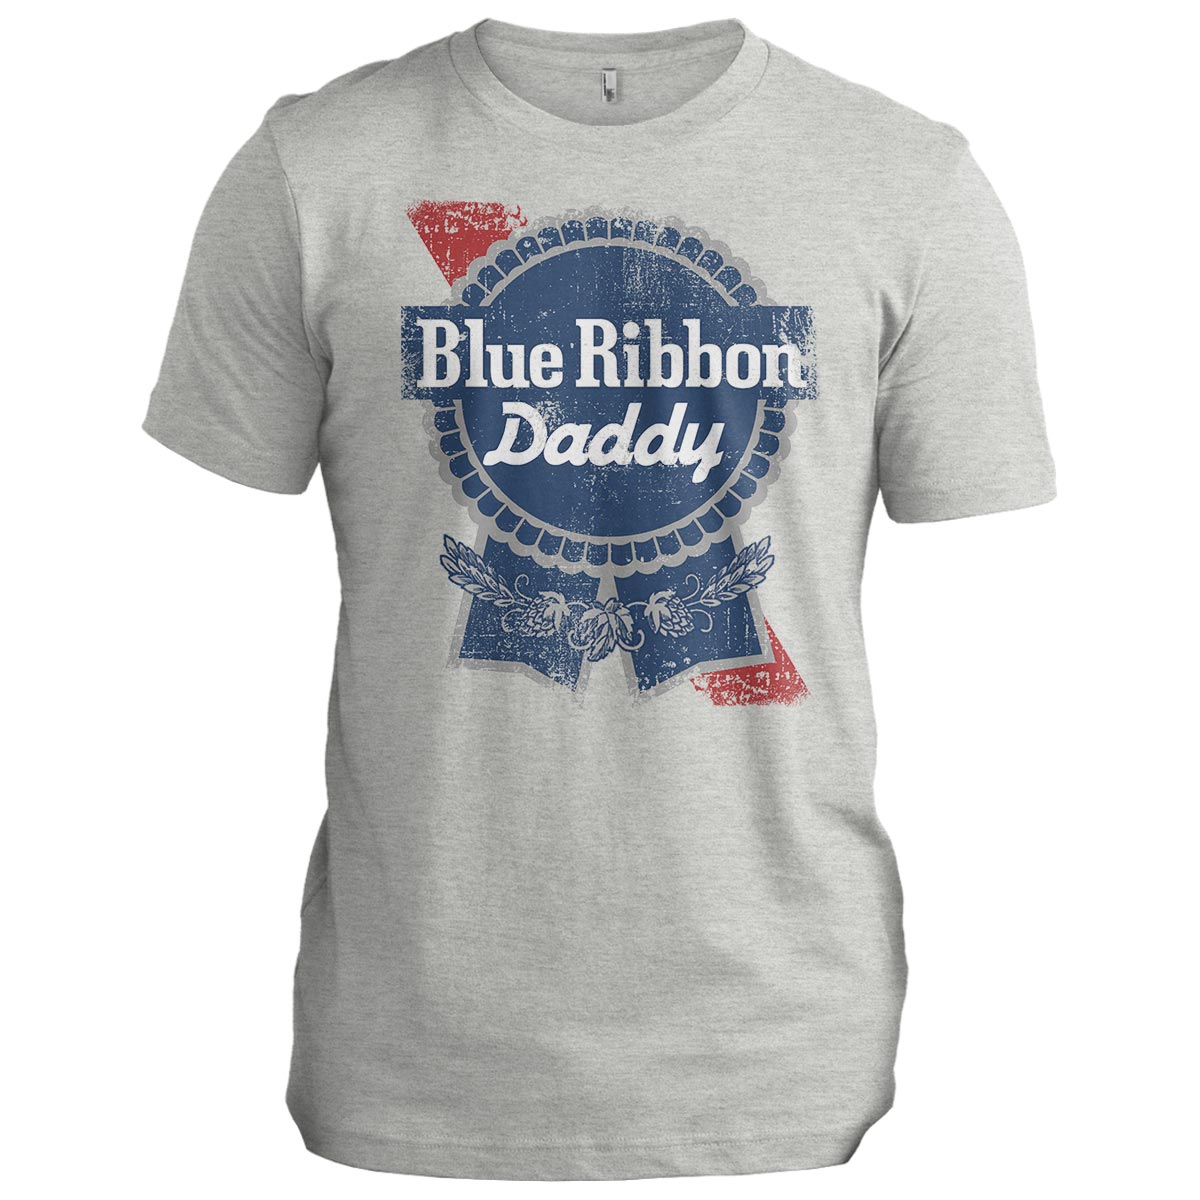 Blue Ribbon daddy